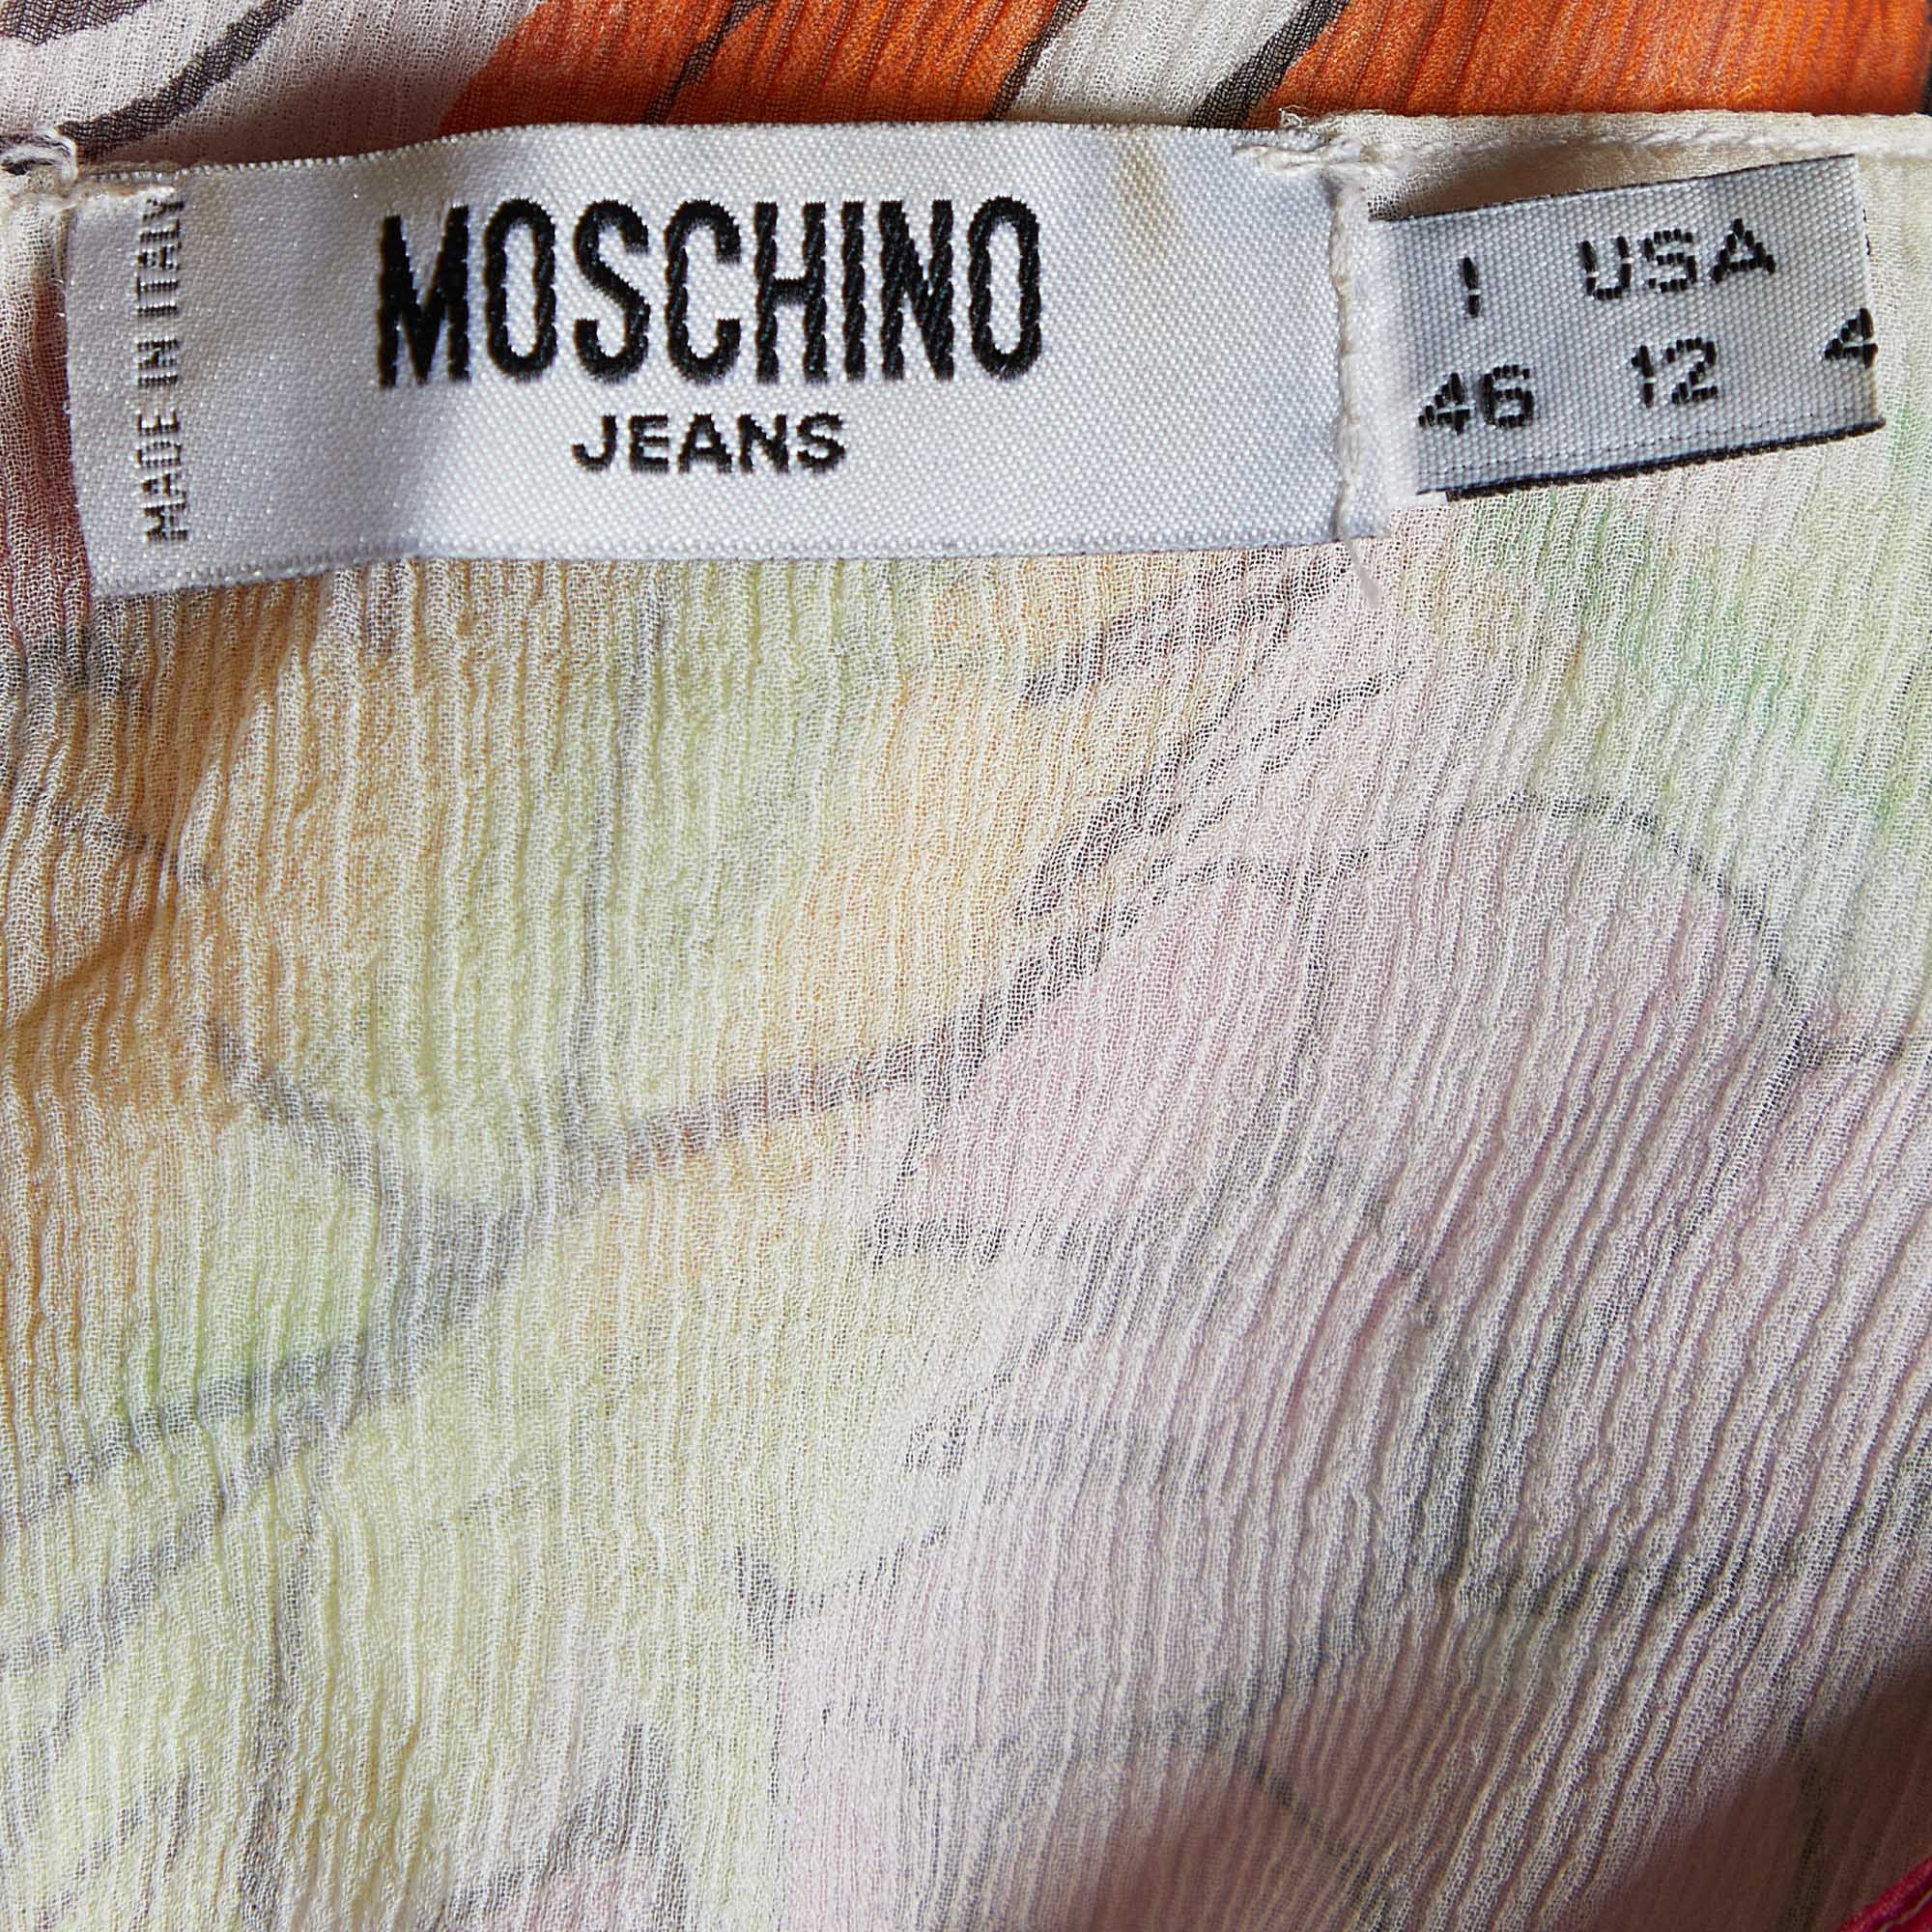 Moschino Jeans Multicolor Printed Silk Chiffon Mini Dress L